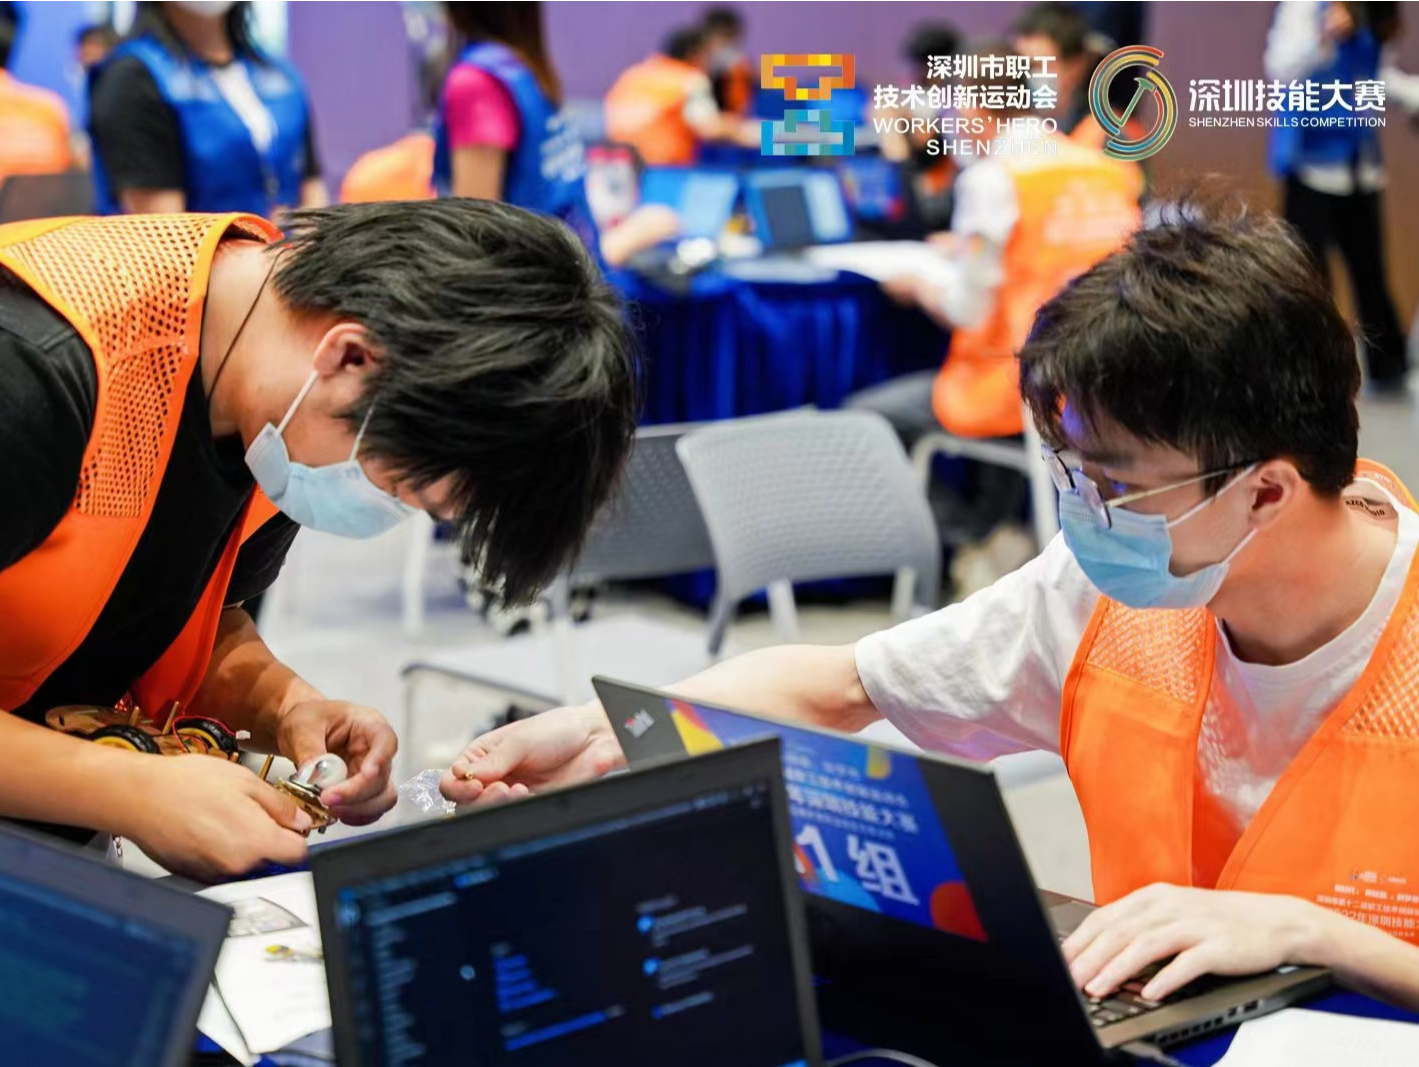 集成电路应用开发职业技能竞赛在深圳光明区举行